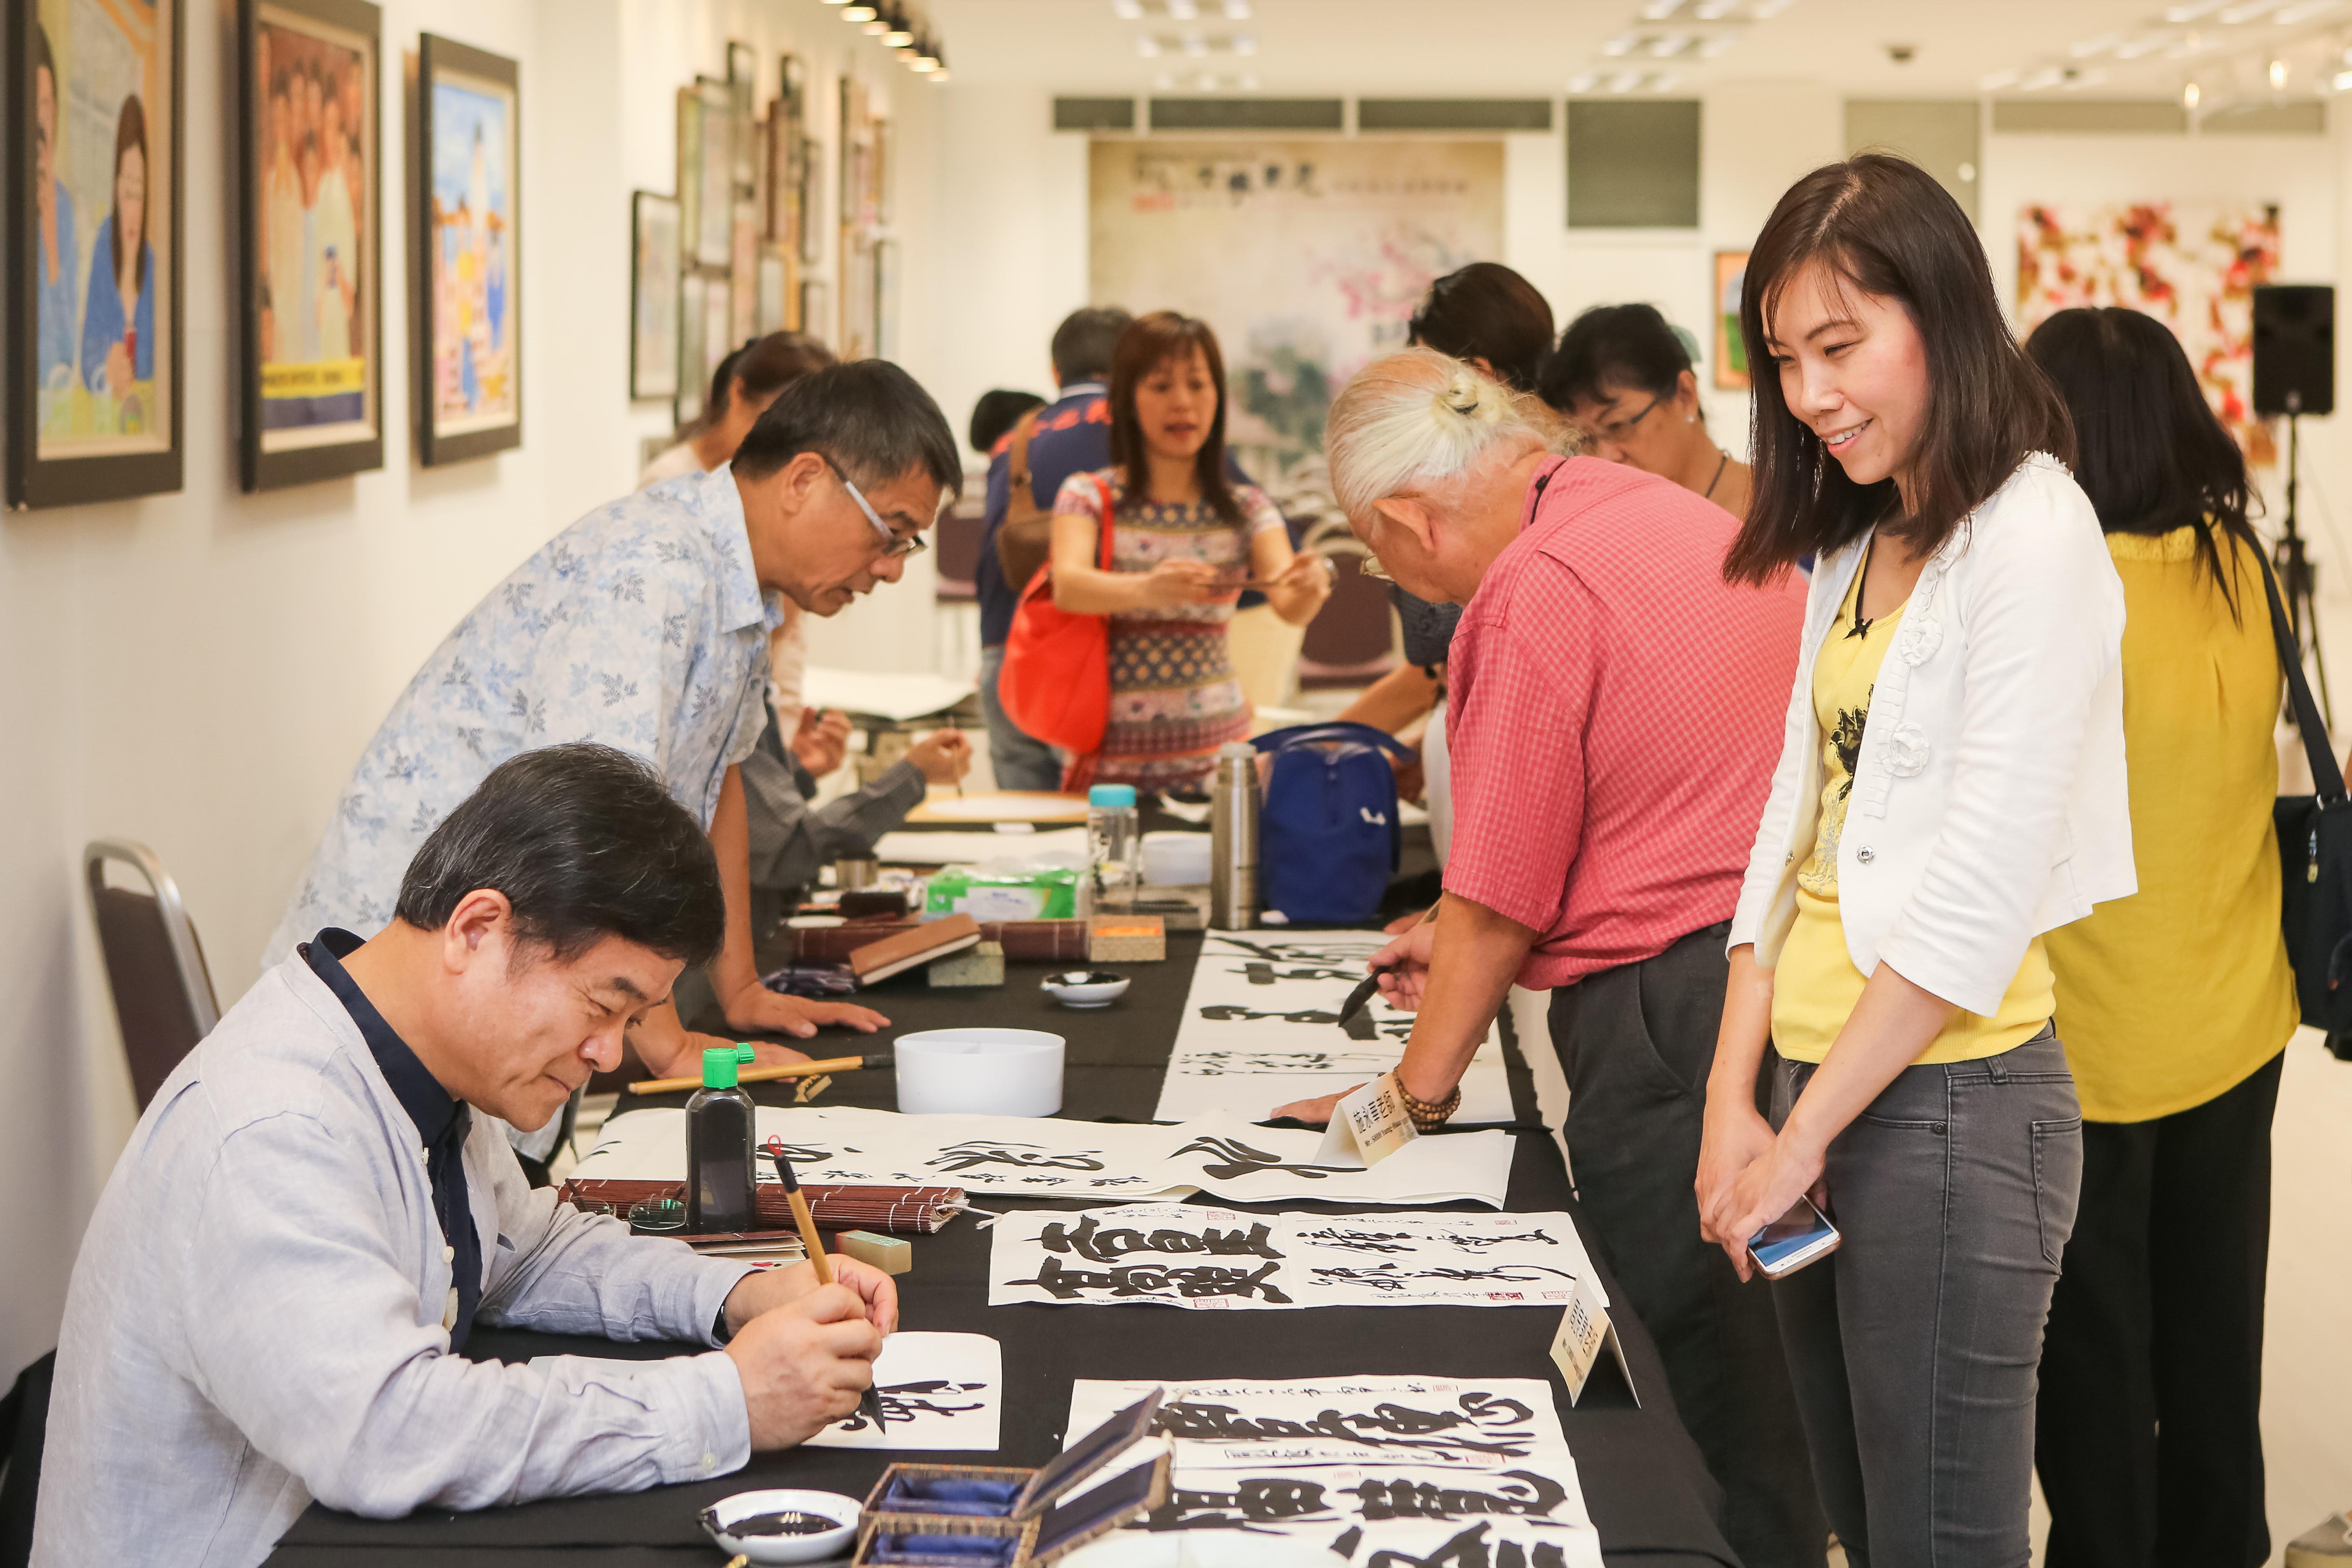 Empat artis Taiwan mempamerkan karya seni mereka yang amat unik dalam sesi demonstrasi kaligrafi dan lukisan Cina.

